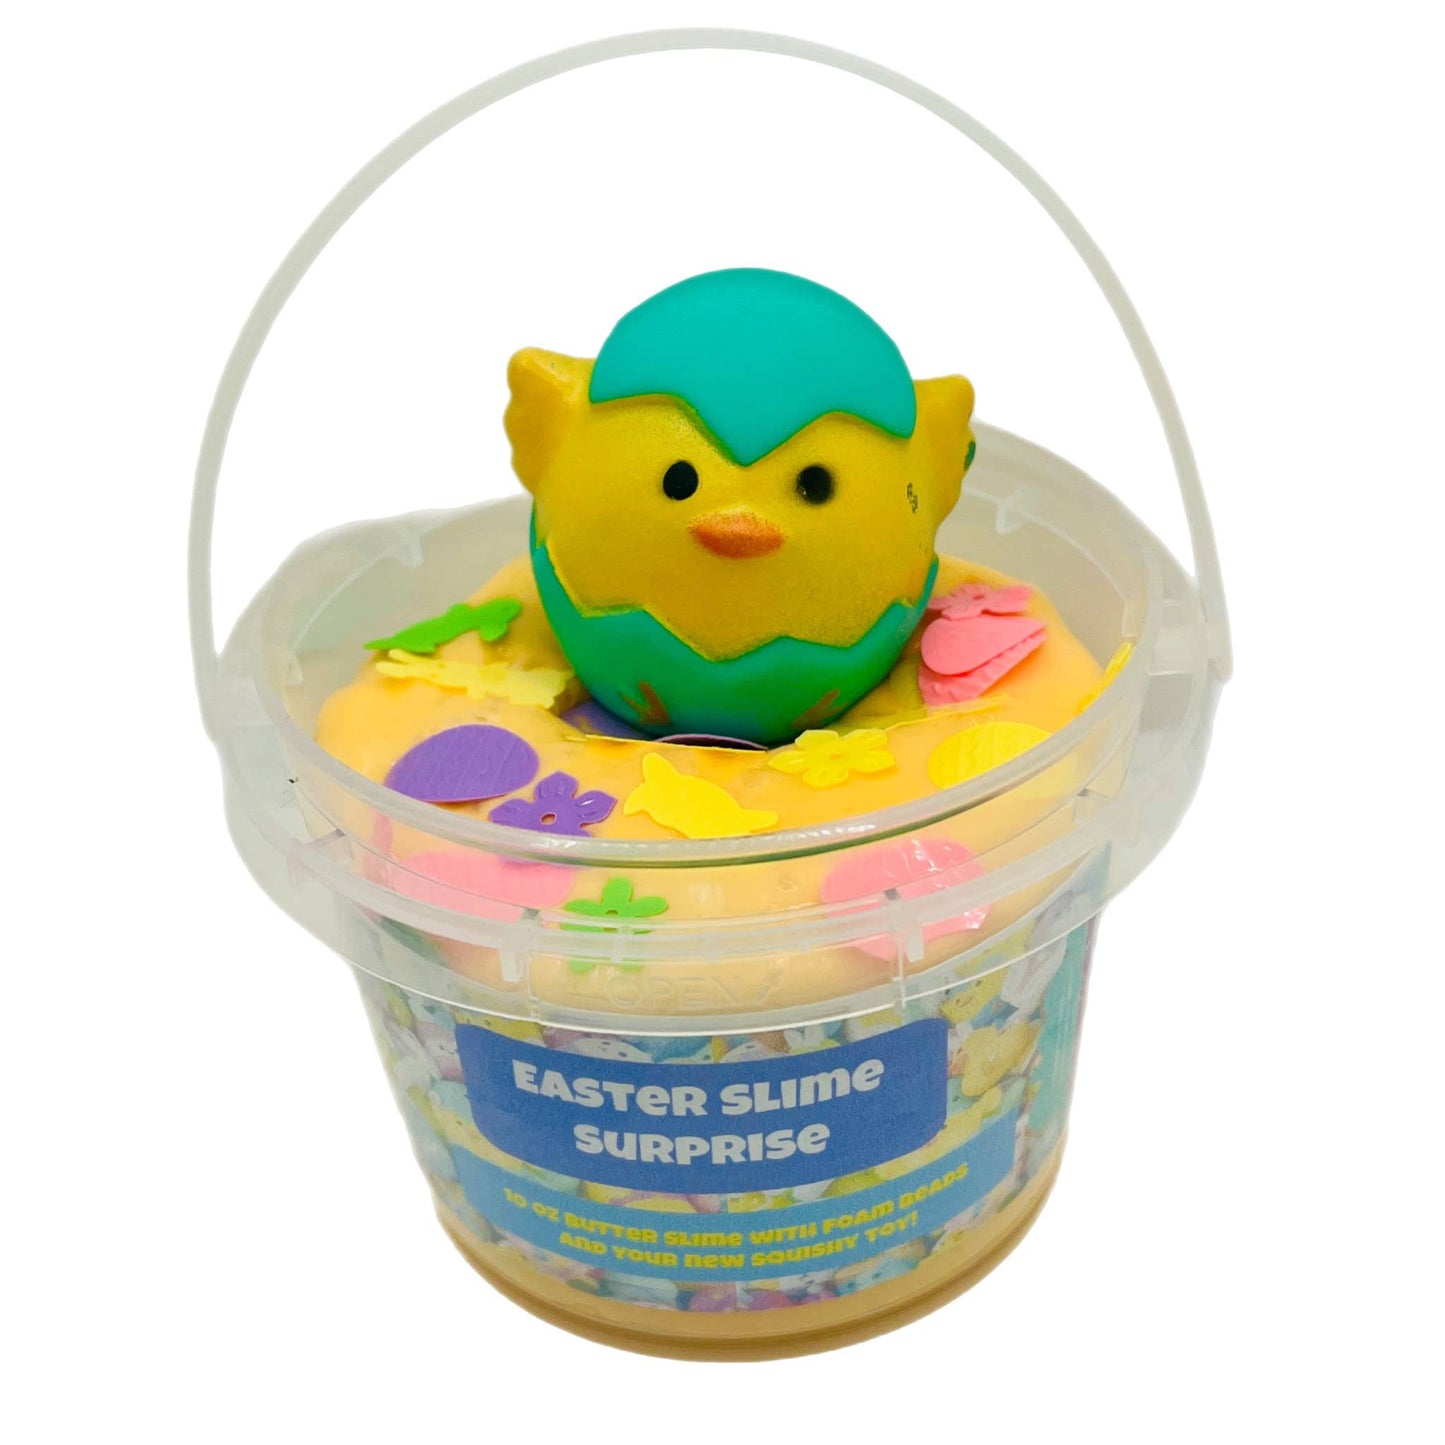 Easter Slime Surprise Basket Stuffer